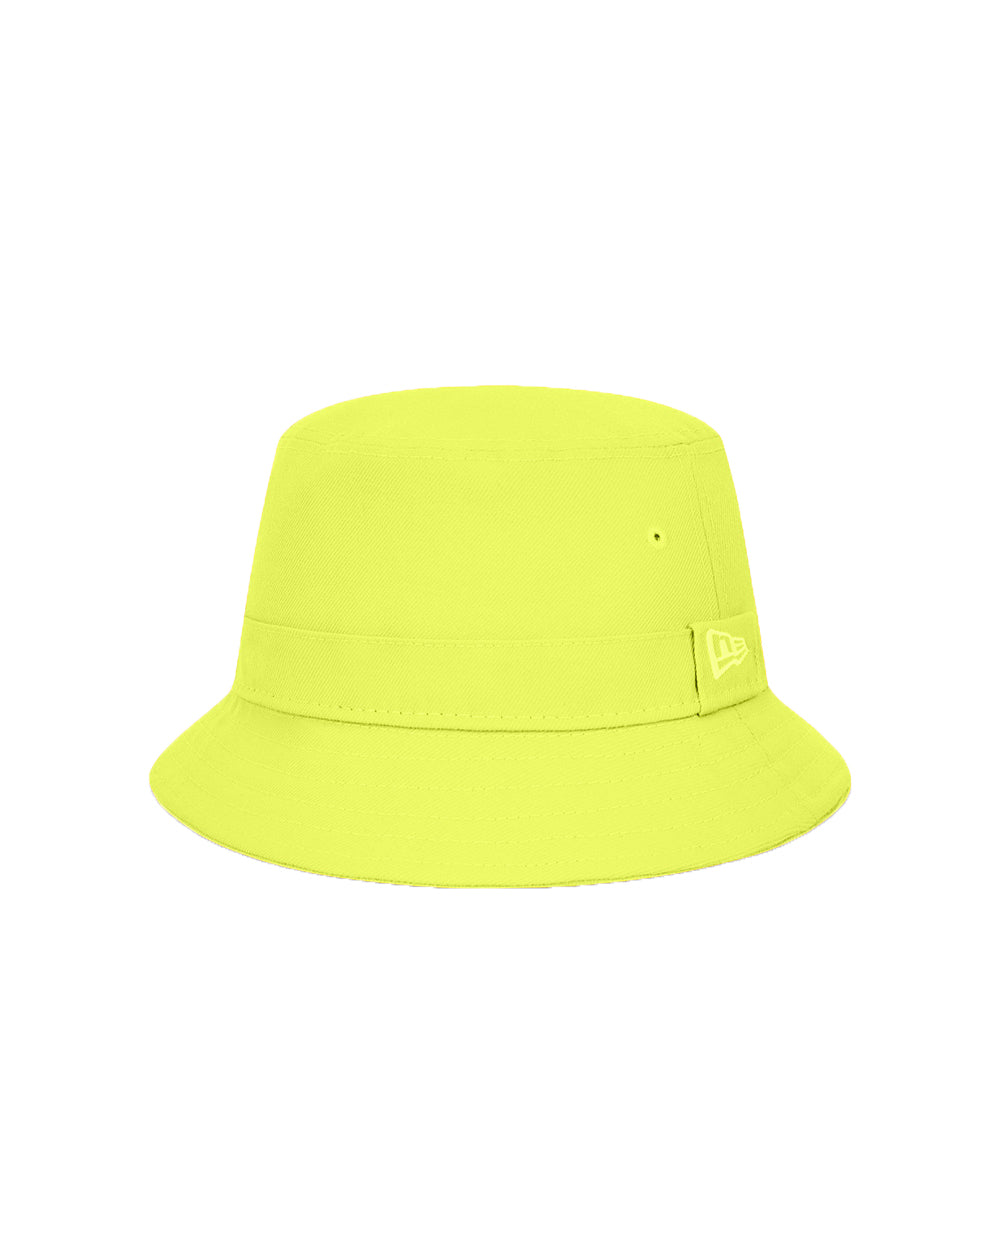 New Era Yellow Hat